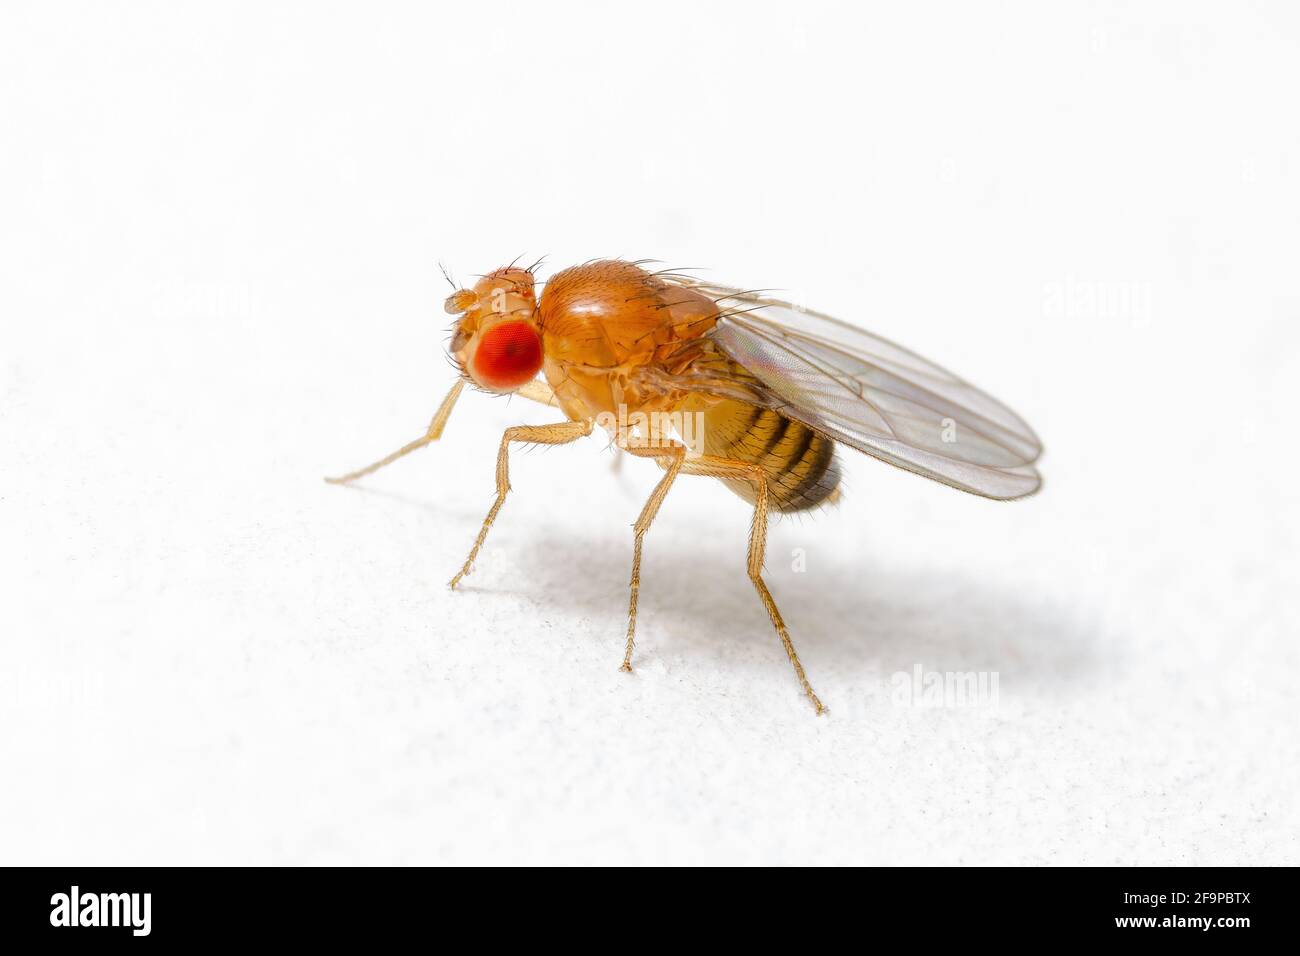 Espèce exotique de drosophila mouche de fruits Diptera parasite insecte sur fond blanc Banque D'Images